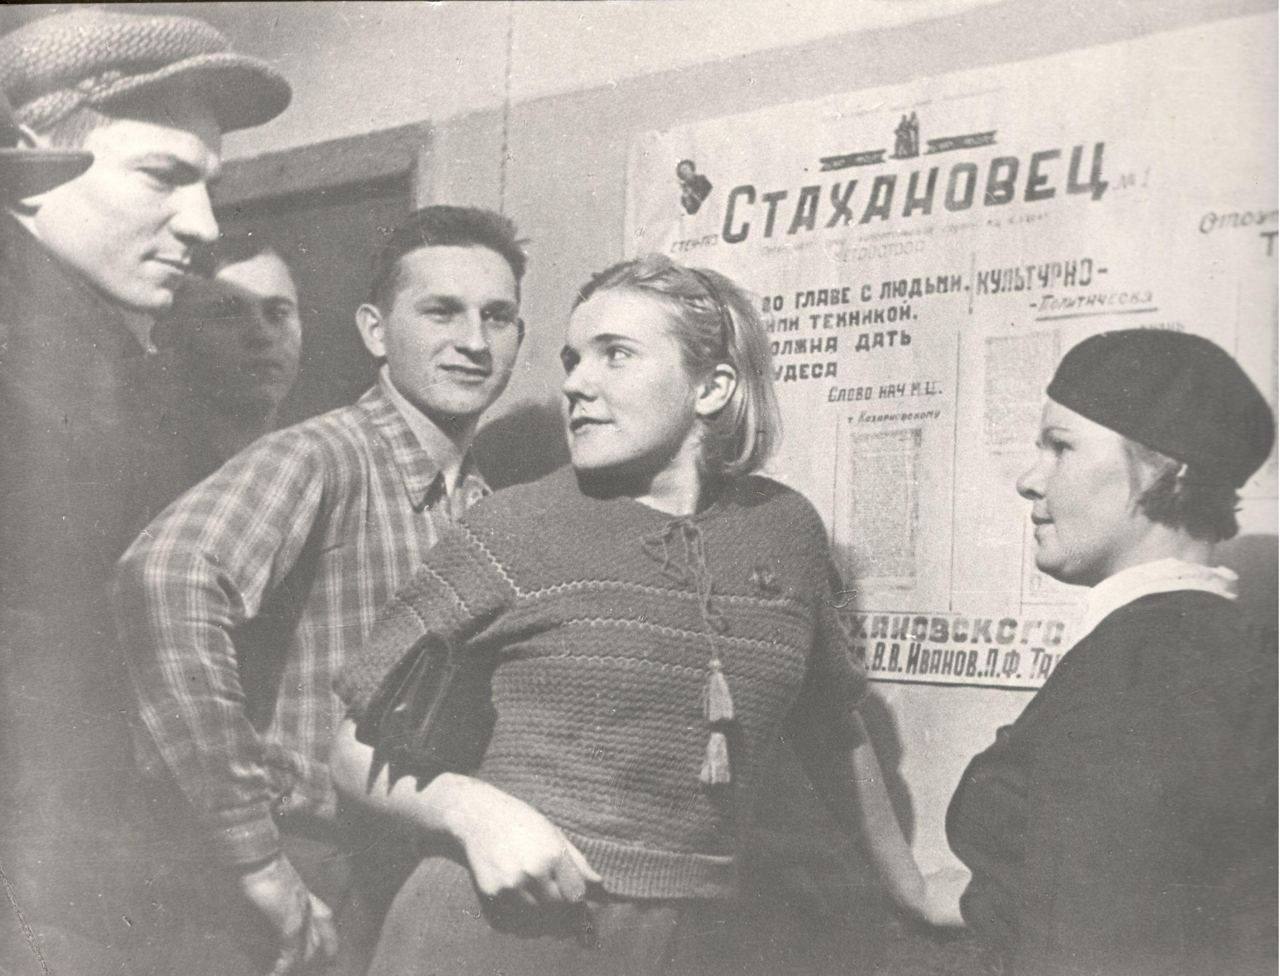 Фото групповое, в центре Киеня С. А. — одна из первых женщин метростроя у стенгазеты «Стахановец» Документы строителя С. А. Киеня. 1930 г. Фонды Музея Москвы